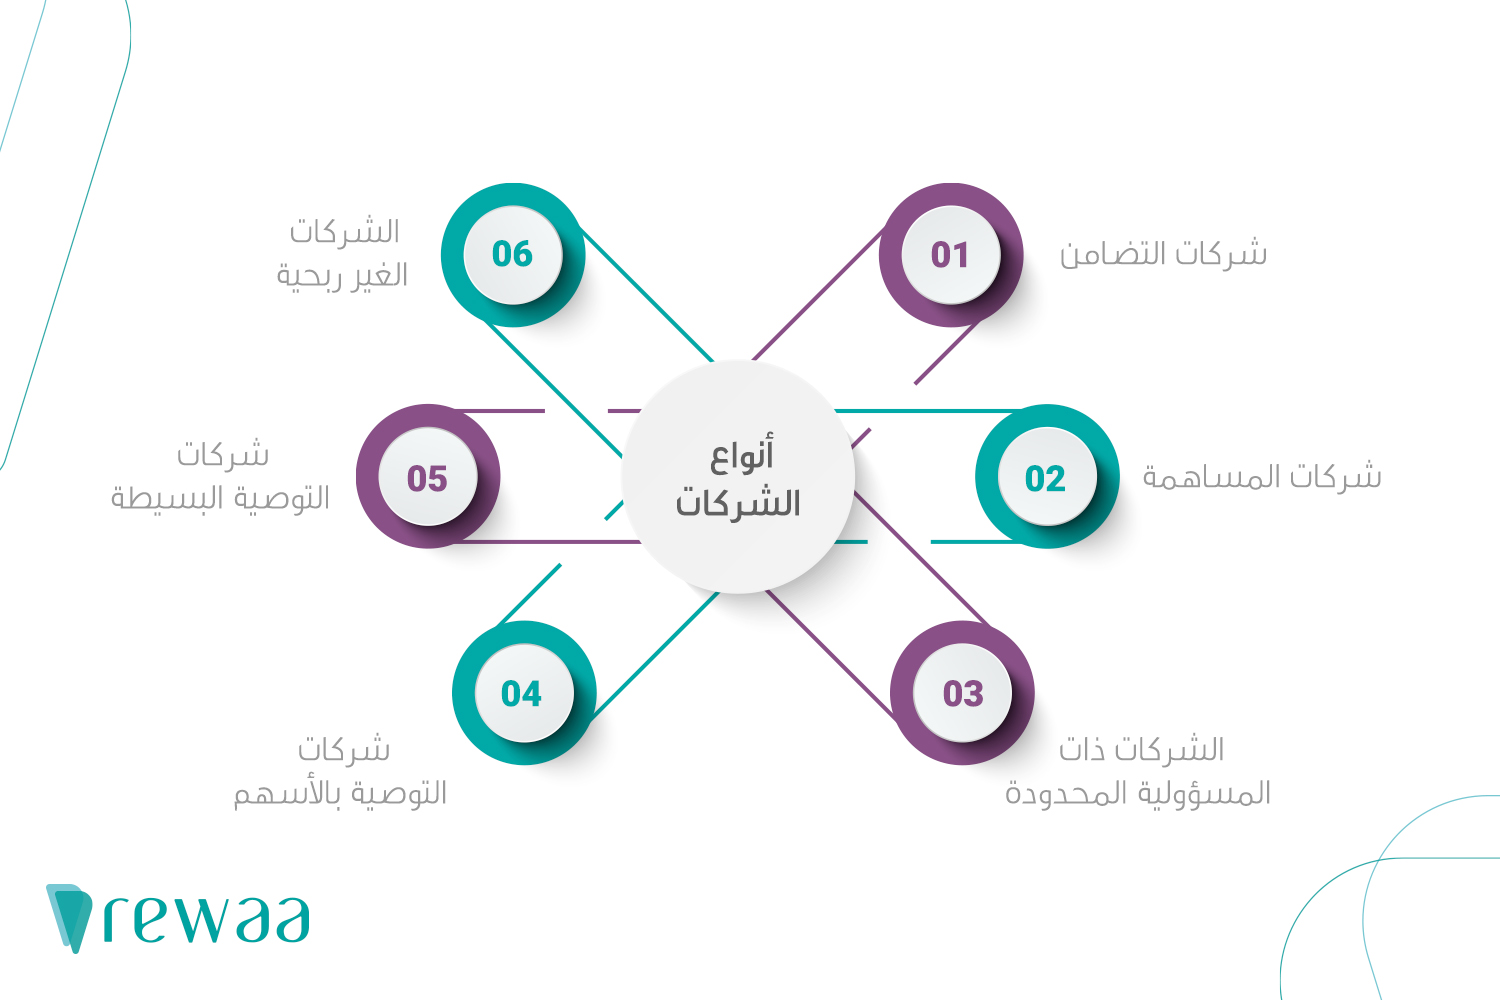 استراتيجيات ناجحة لإنشاء وإدارة شركة بموجب نظام الشركات السعودي - تعريف نظام الشركات السعودي وأنواعه